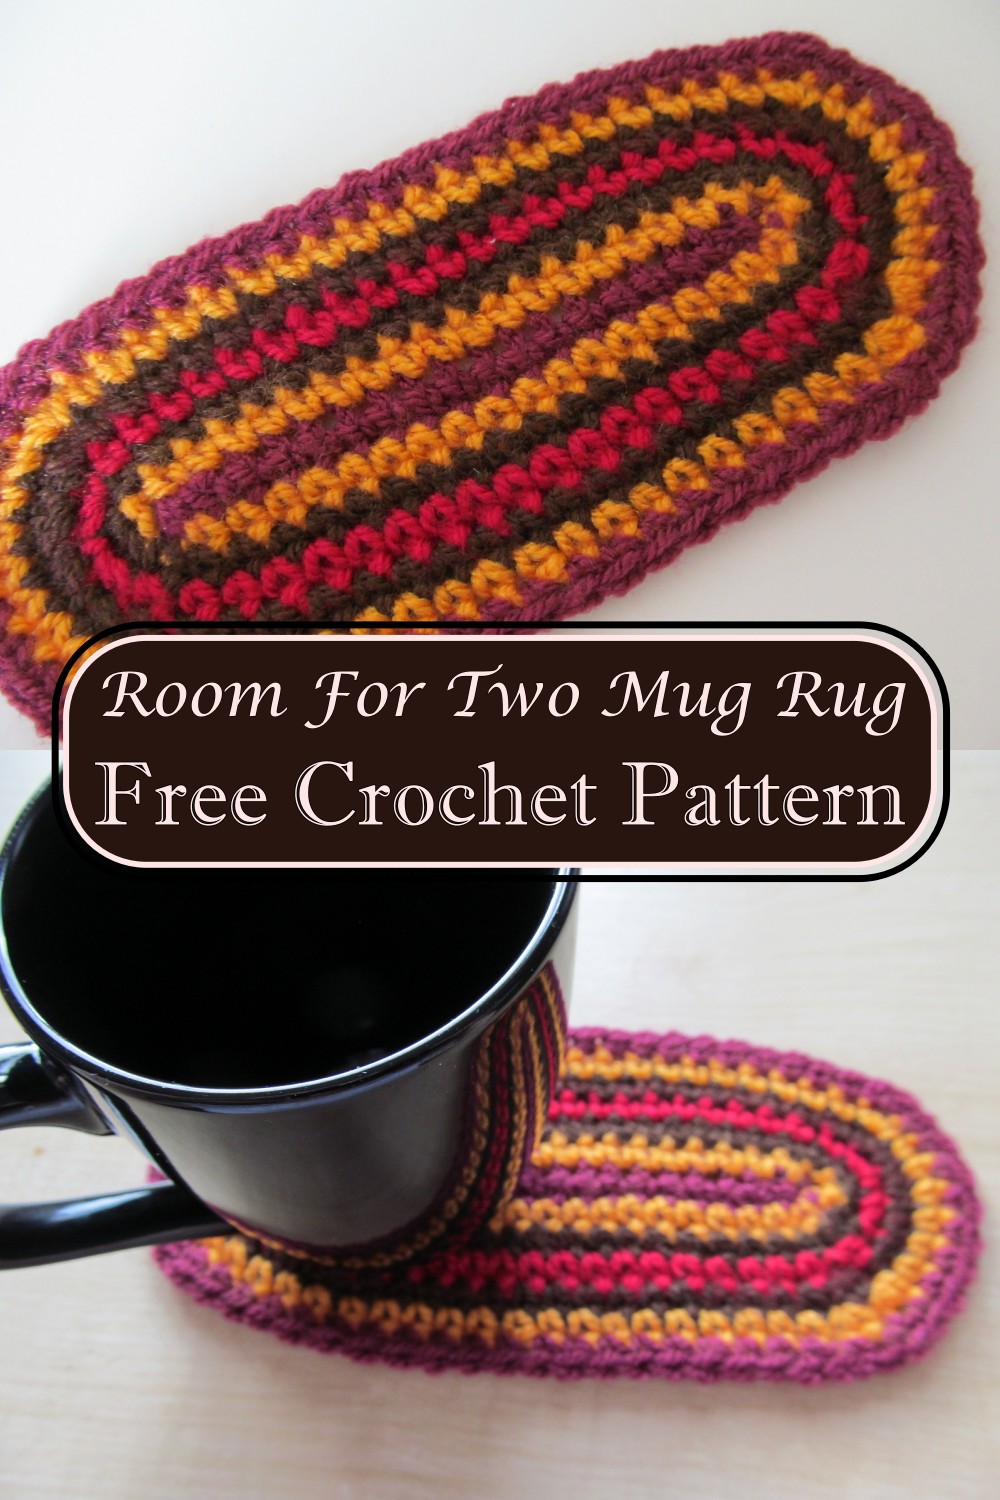 Room For Two Mug Rug